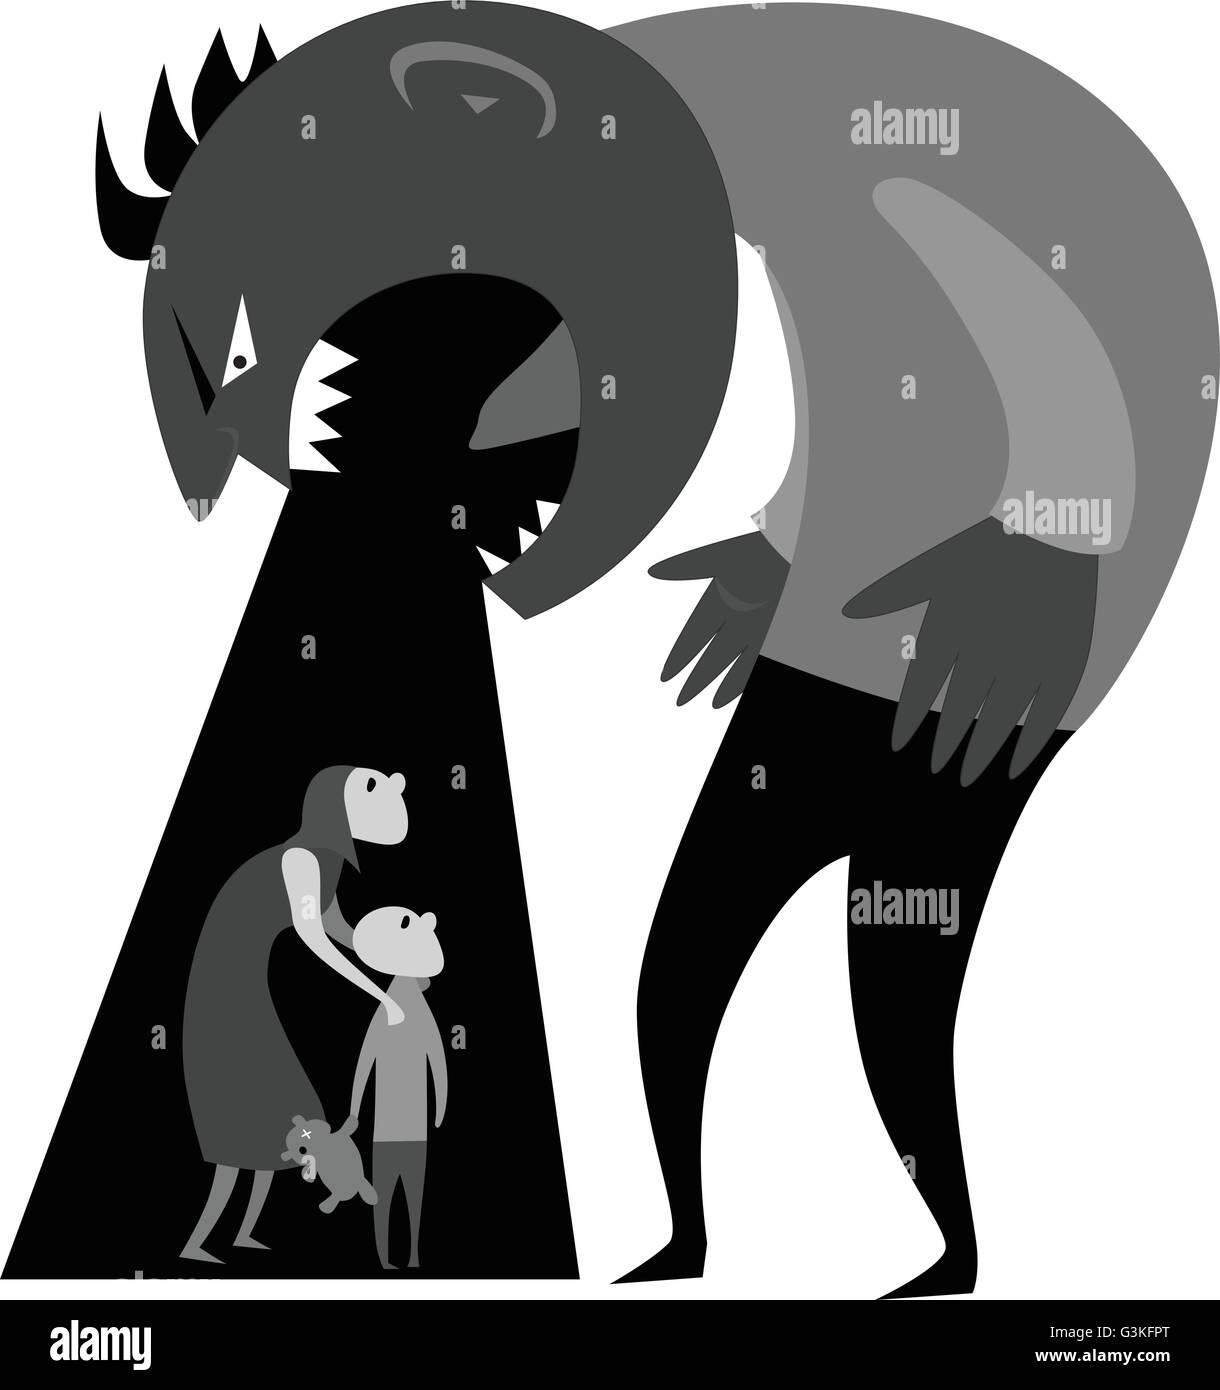 Häuslicher Gewalt. Männliche Monster schreien an Frau und Kind aus häuslicher Gewalt, Graustufen-Vektor-illustration Stock Vektor